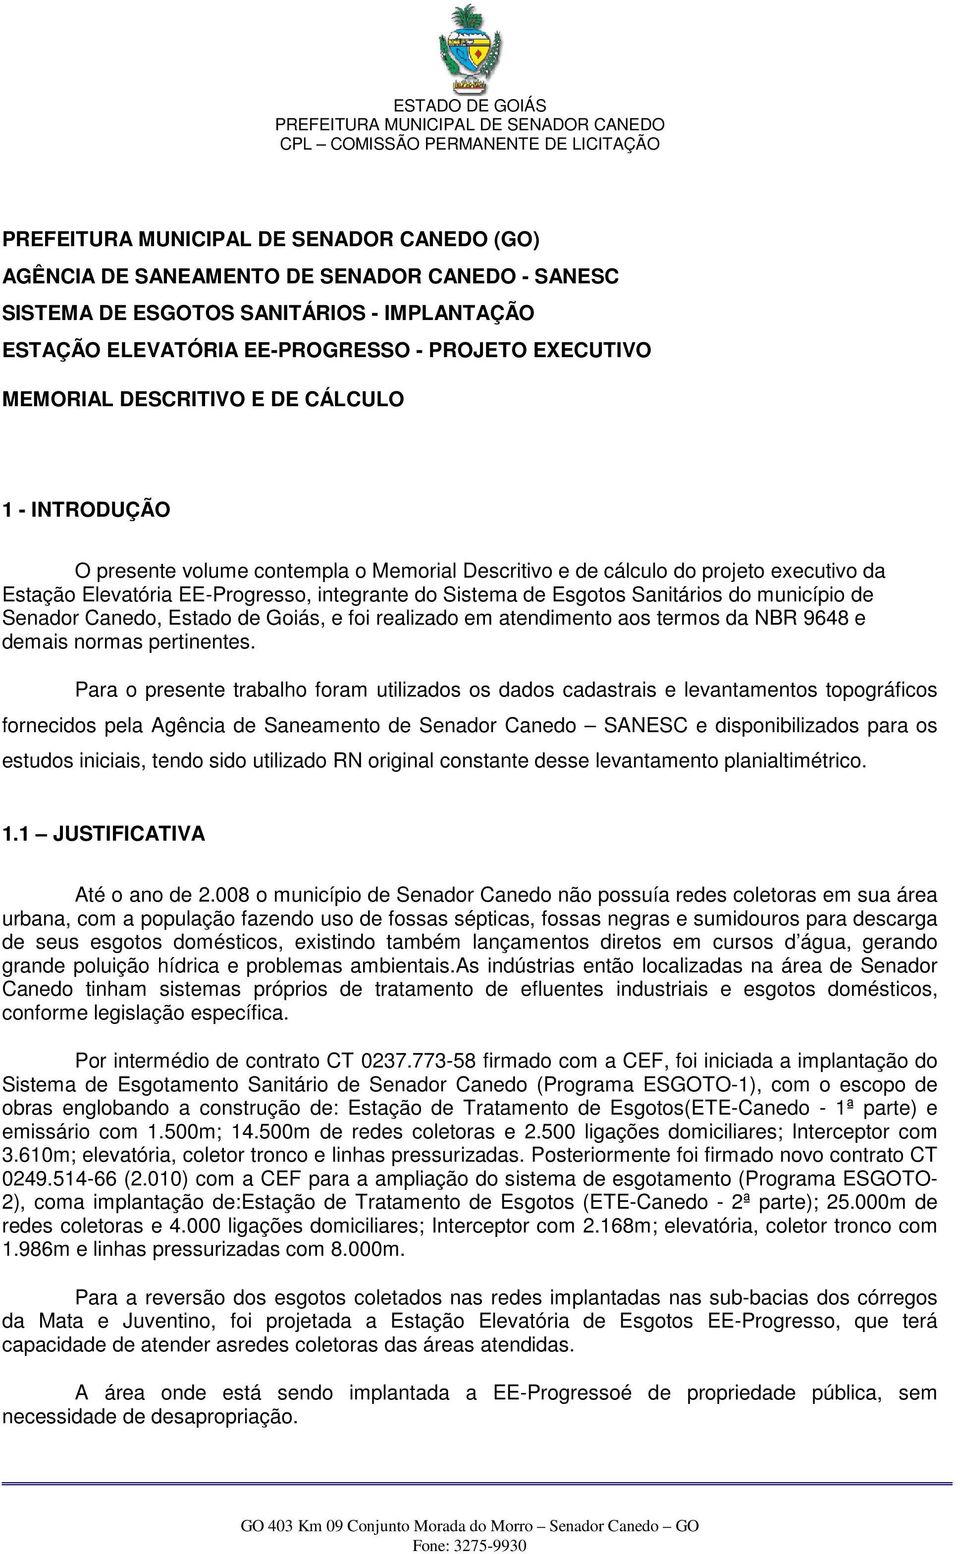 Estado de Goiás, e foi realizado em atendimento aos termos da NBR 9648 e demais normas pertinentes.